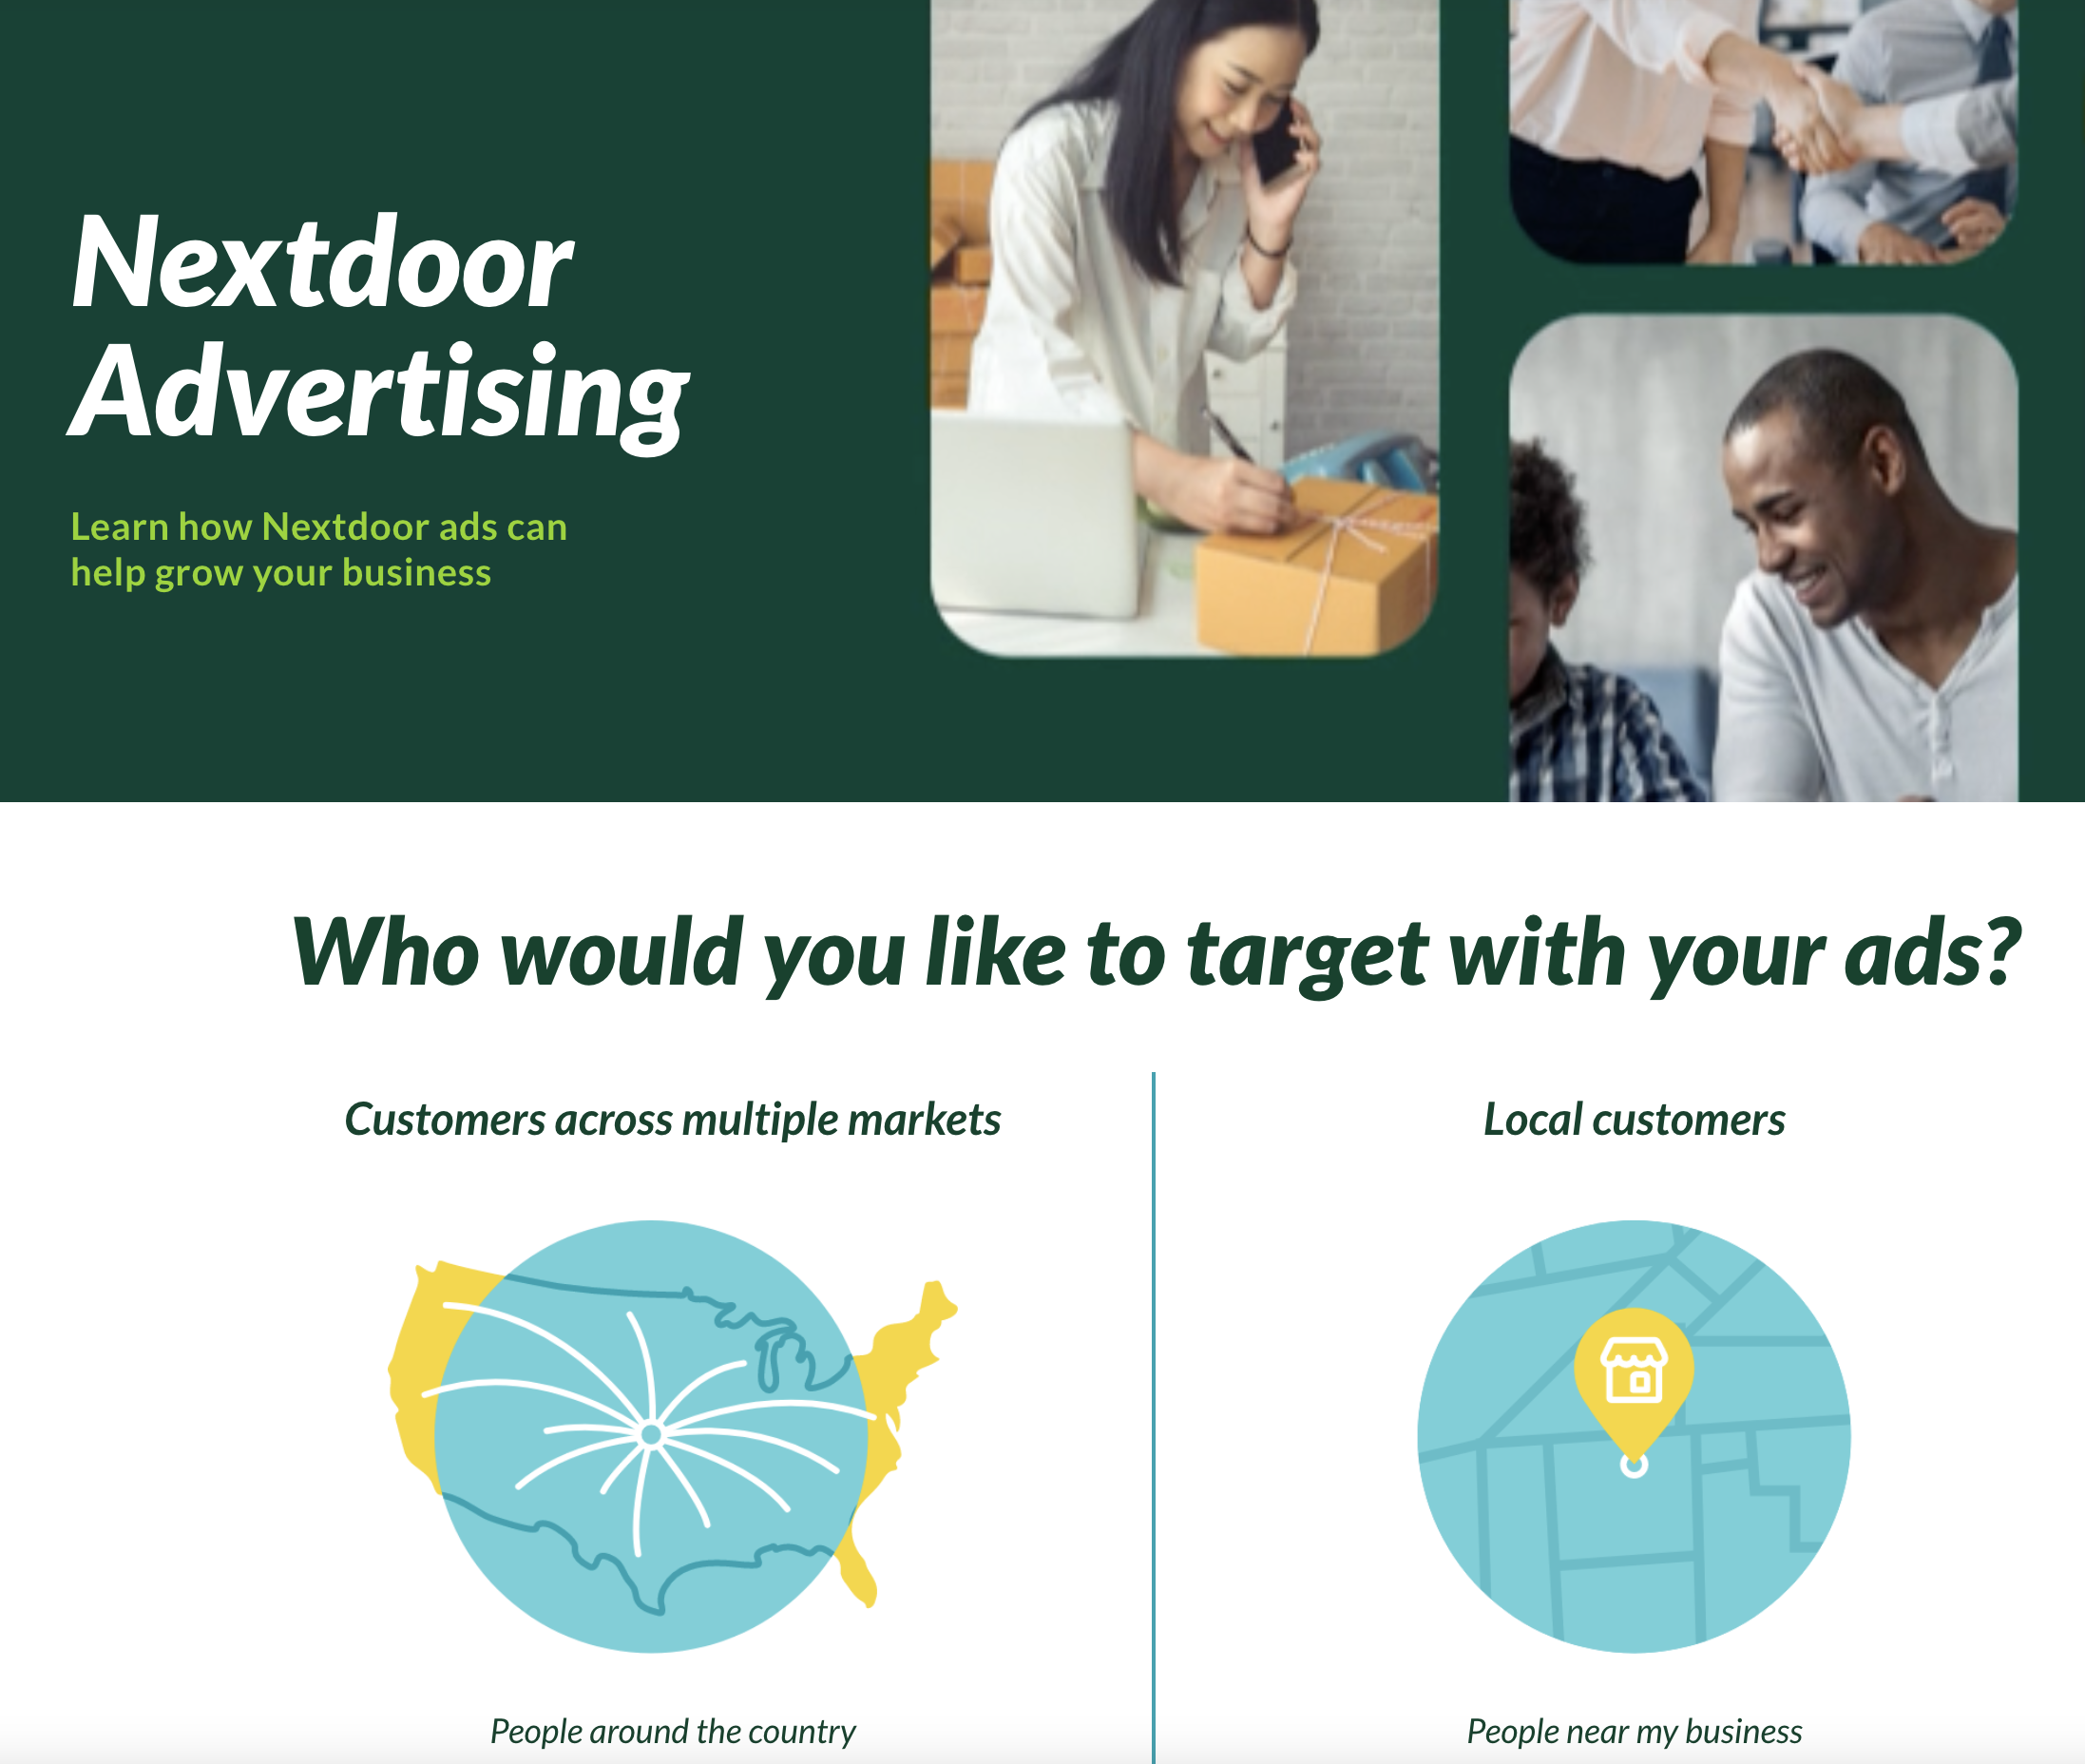 https://business.nextdoor.com/advertising-with-nextdoor